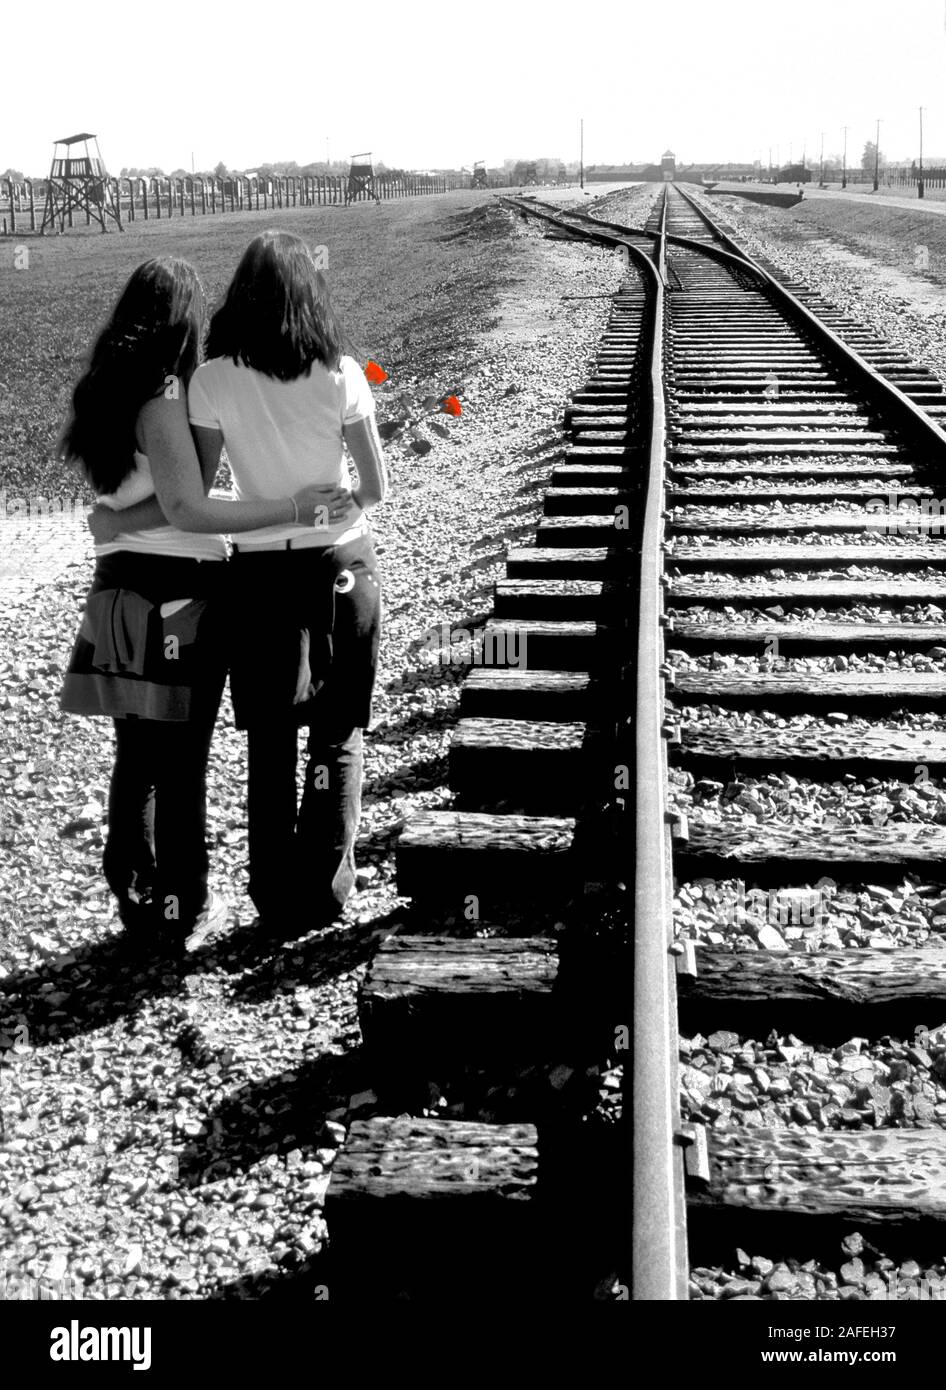 Ricordiamo Auschwitz! Due ragazze norvegesi in viaggio per la pace. Qui vengono alla fine del tracciato ferroviario nel campo di concentramento di Auschwitz II - Birkenau. Foto Stock